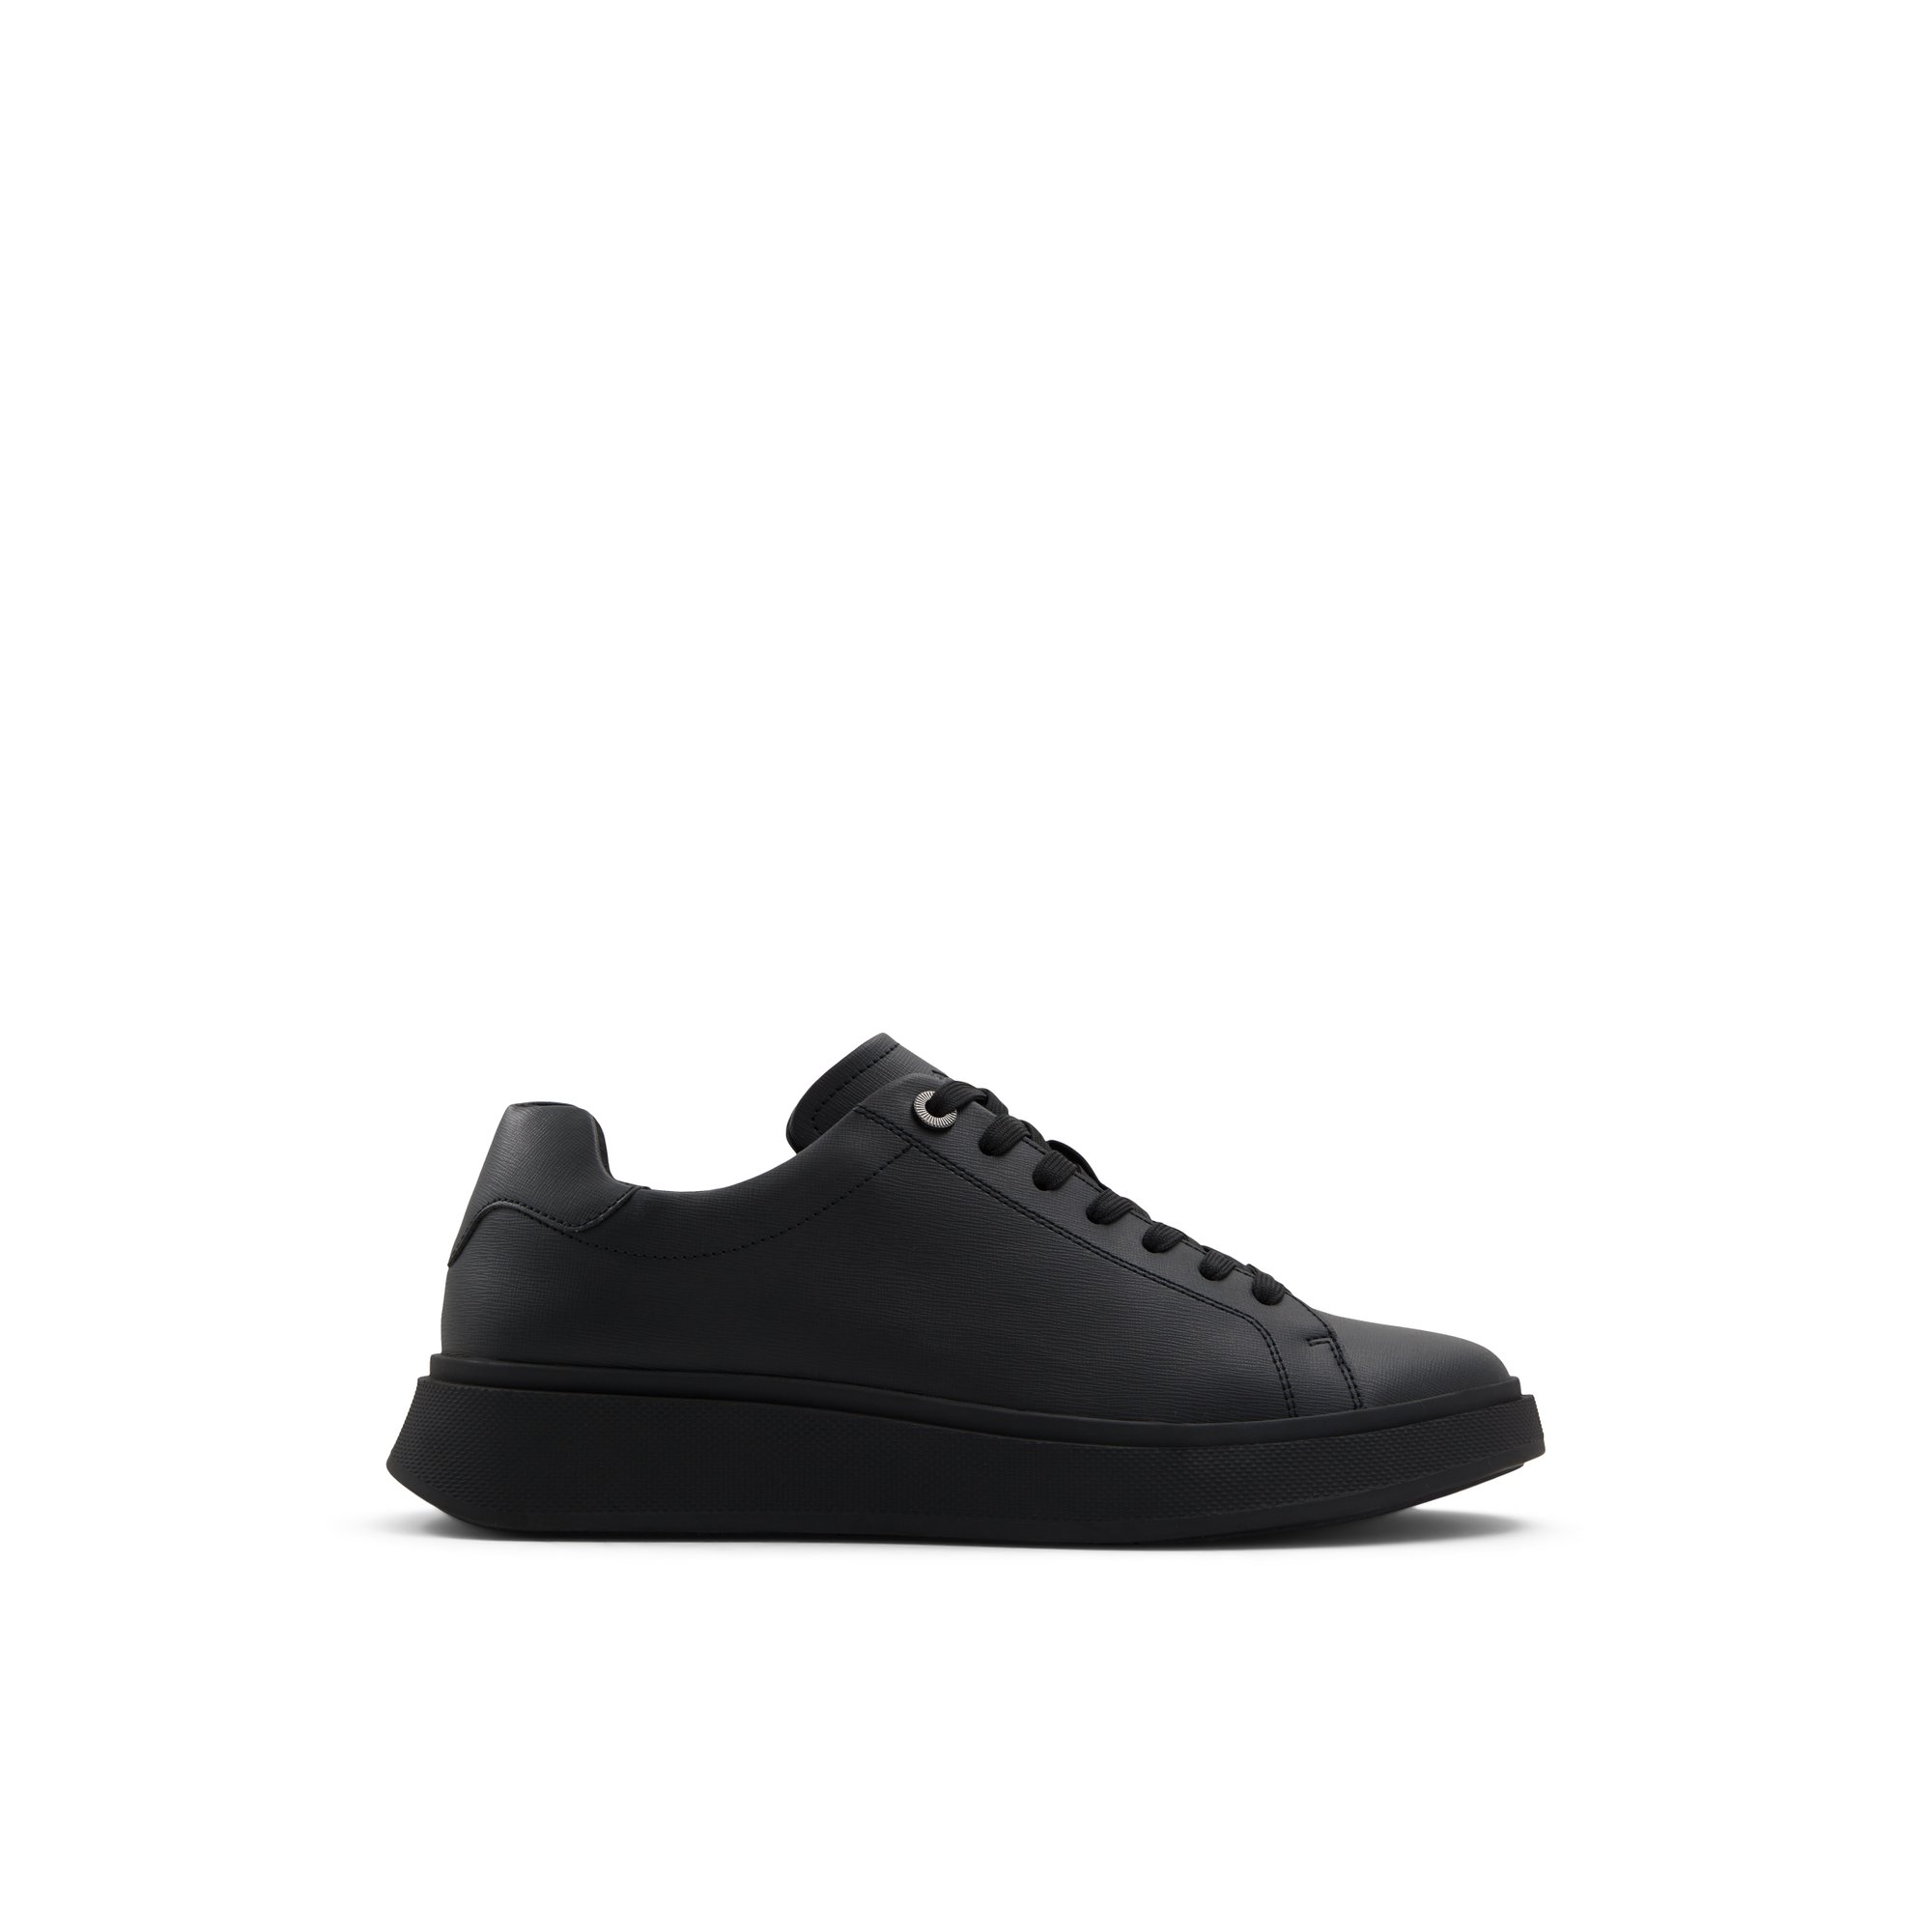 ALDO Magnus - Men's Sneakers Low Top - Black